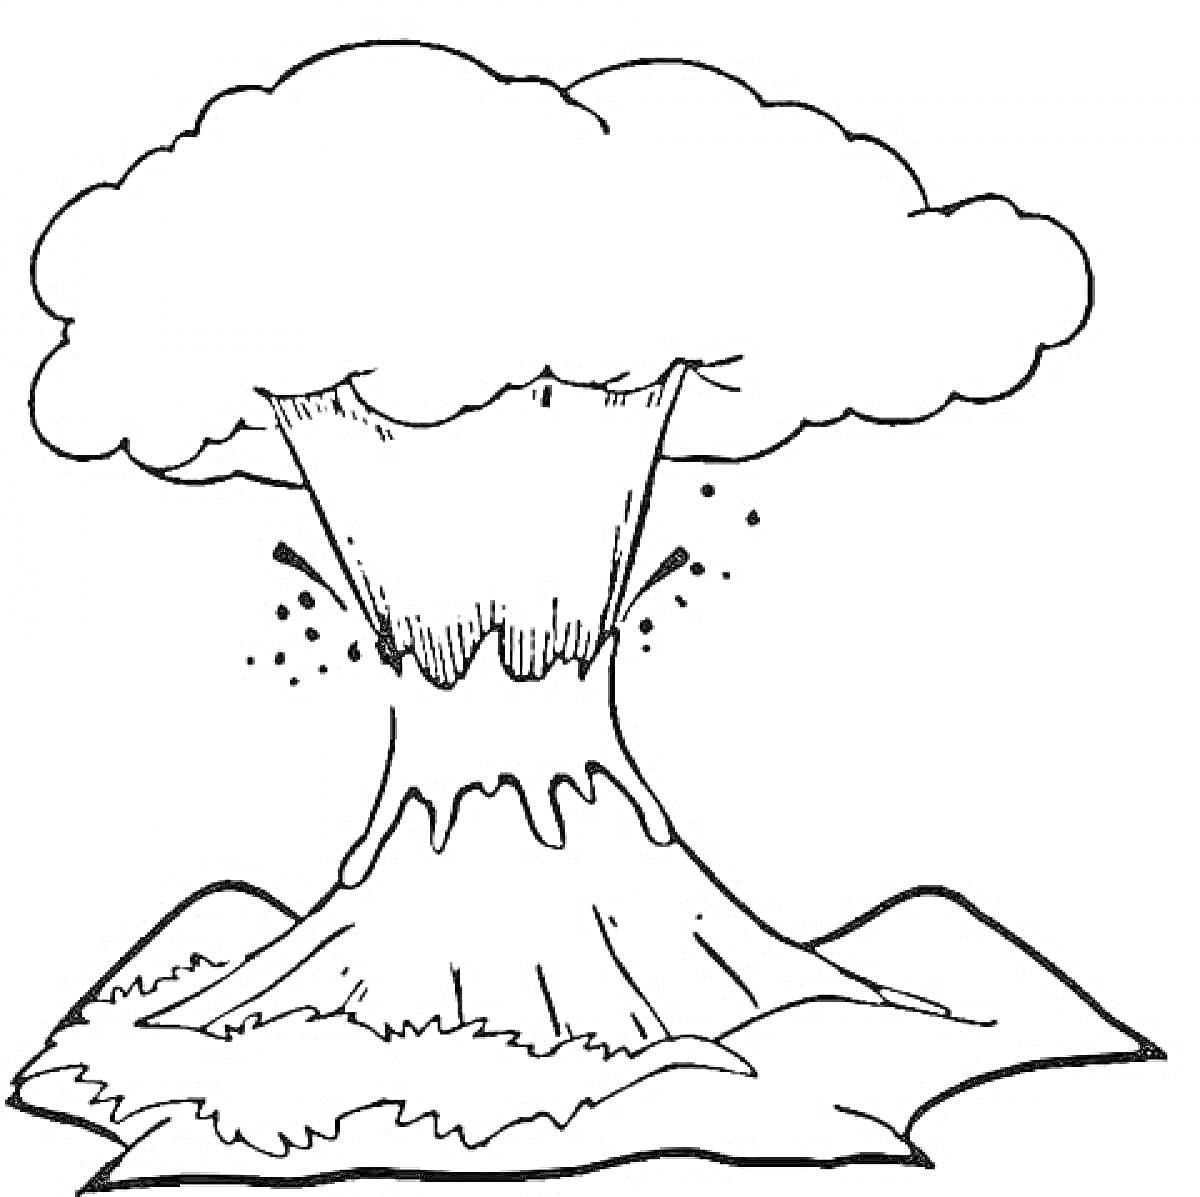 Извержение вулкана с облаком дыма и лавой, окруженного небольшими холмами.